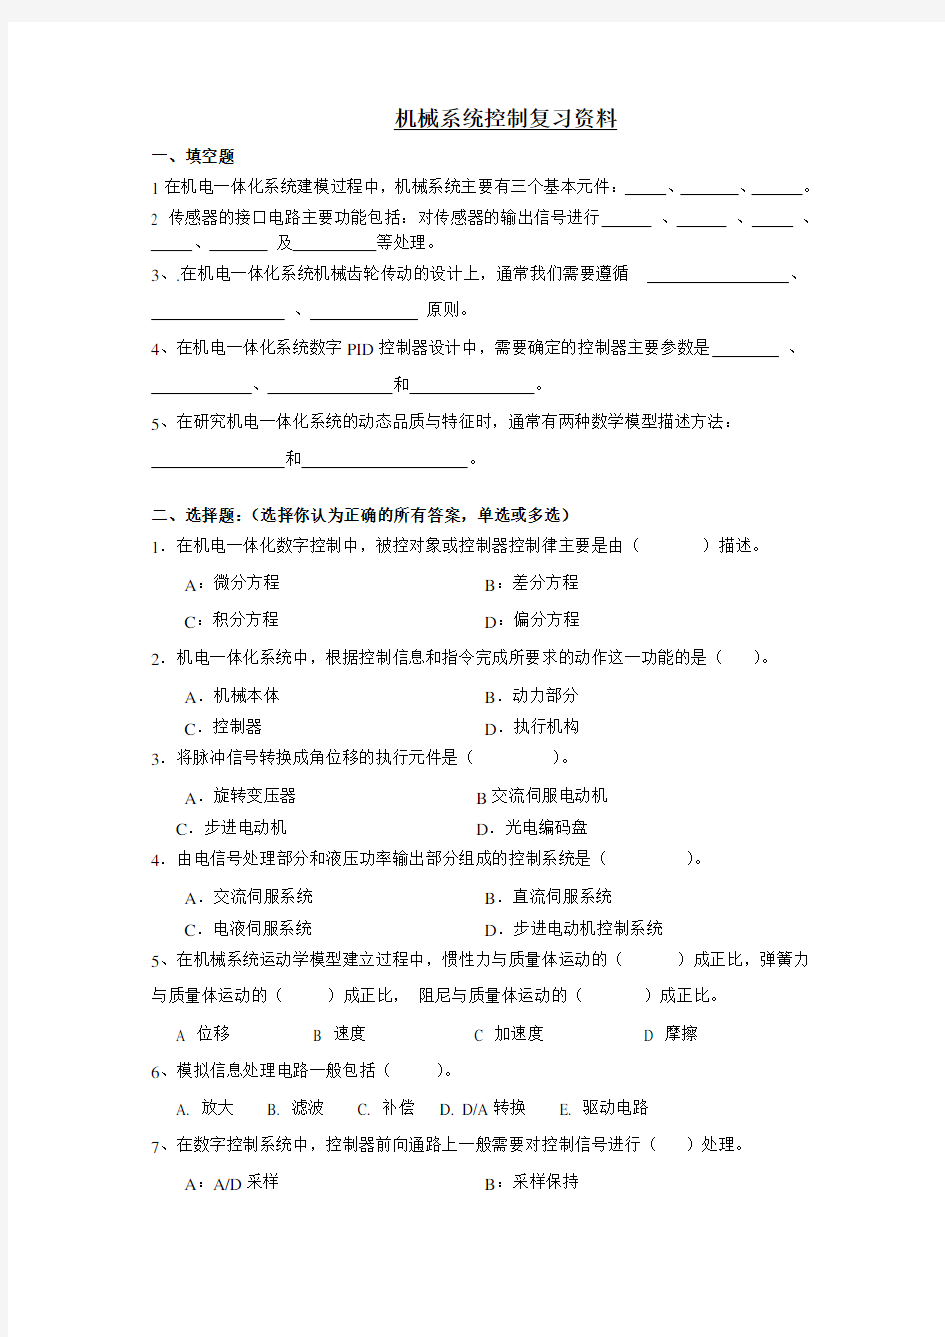 2006年高考广东卷历史试题及参考答案